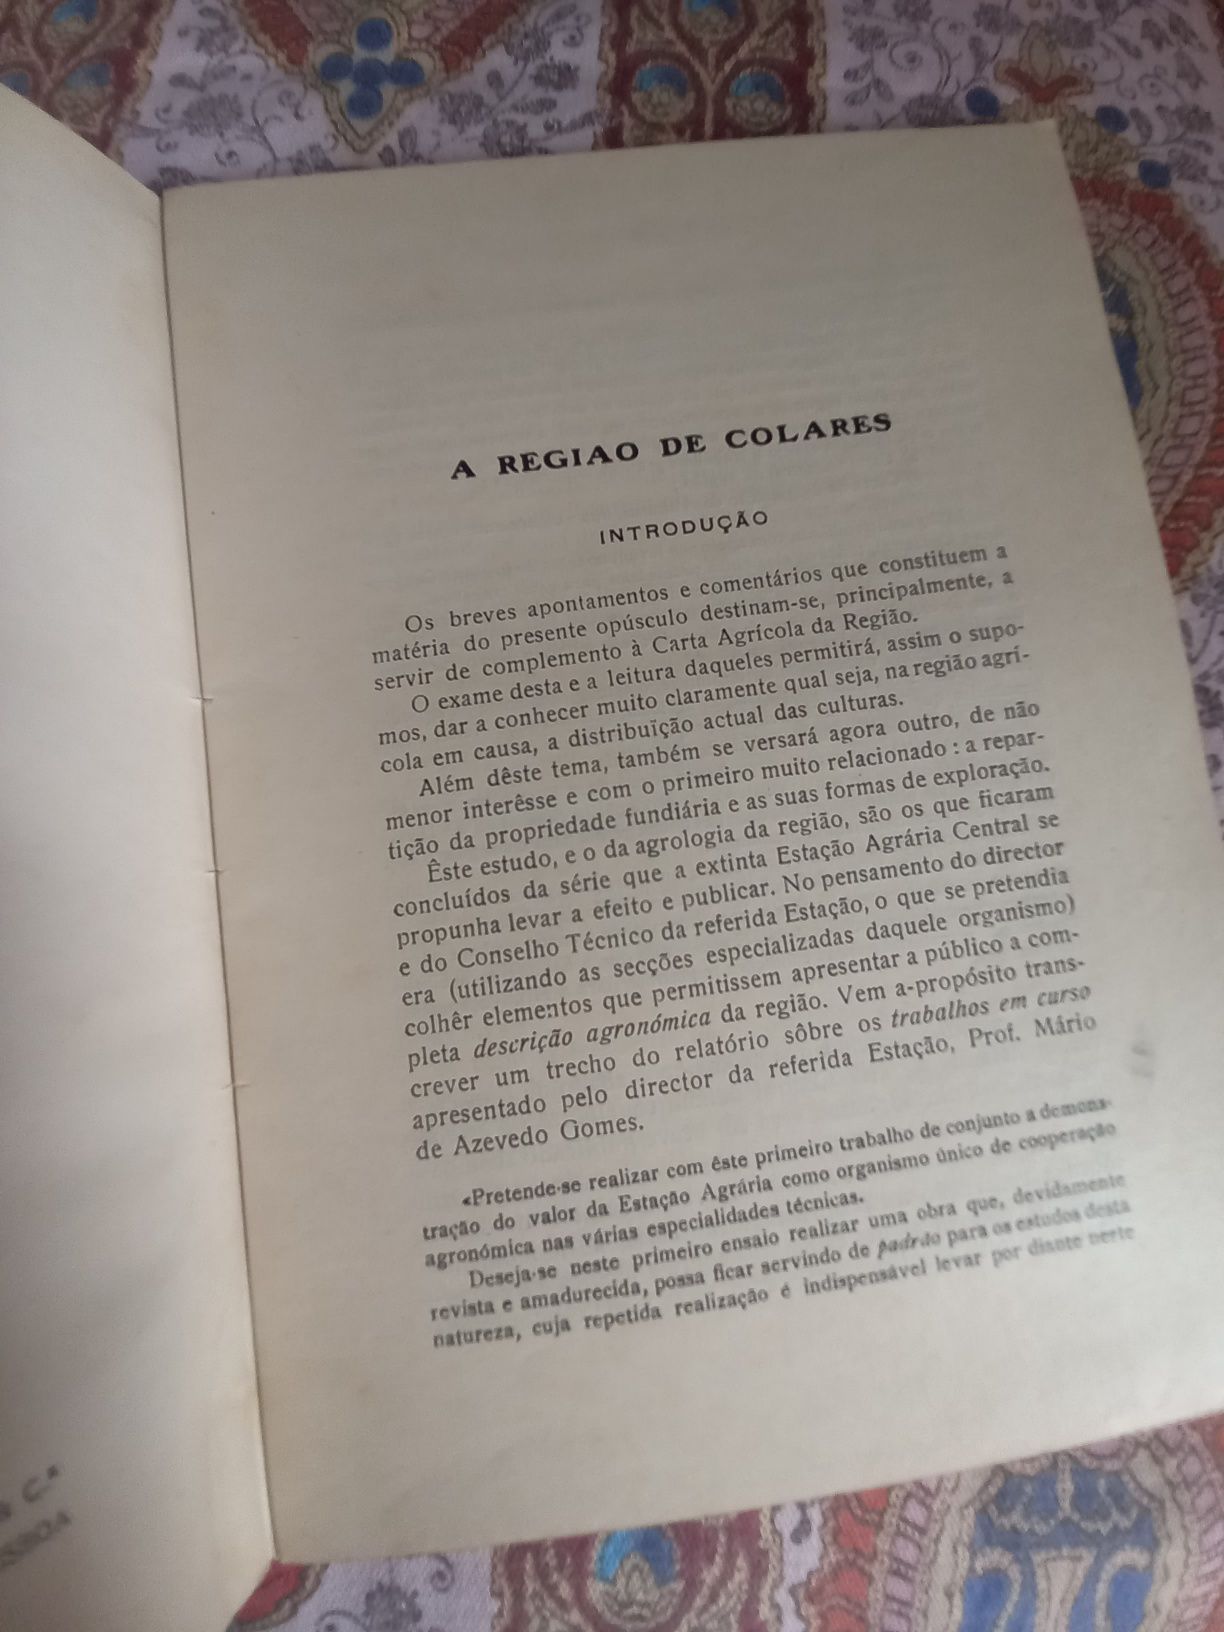 Livro antigo sobre a região agrícola de Colares